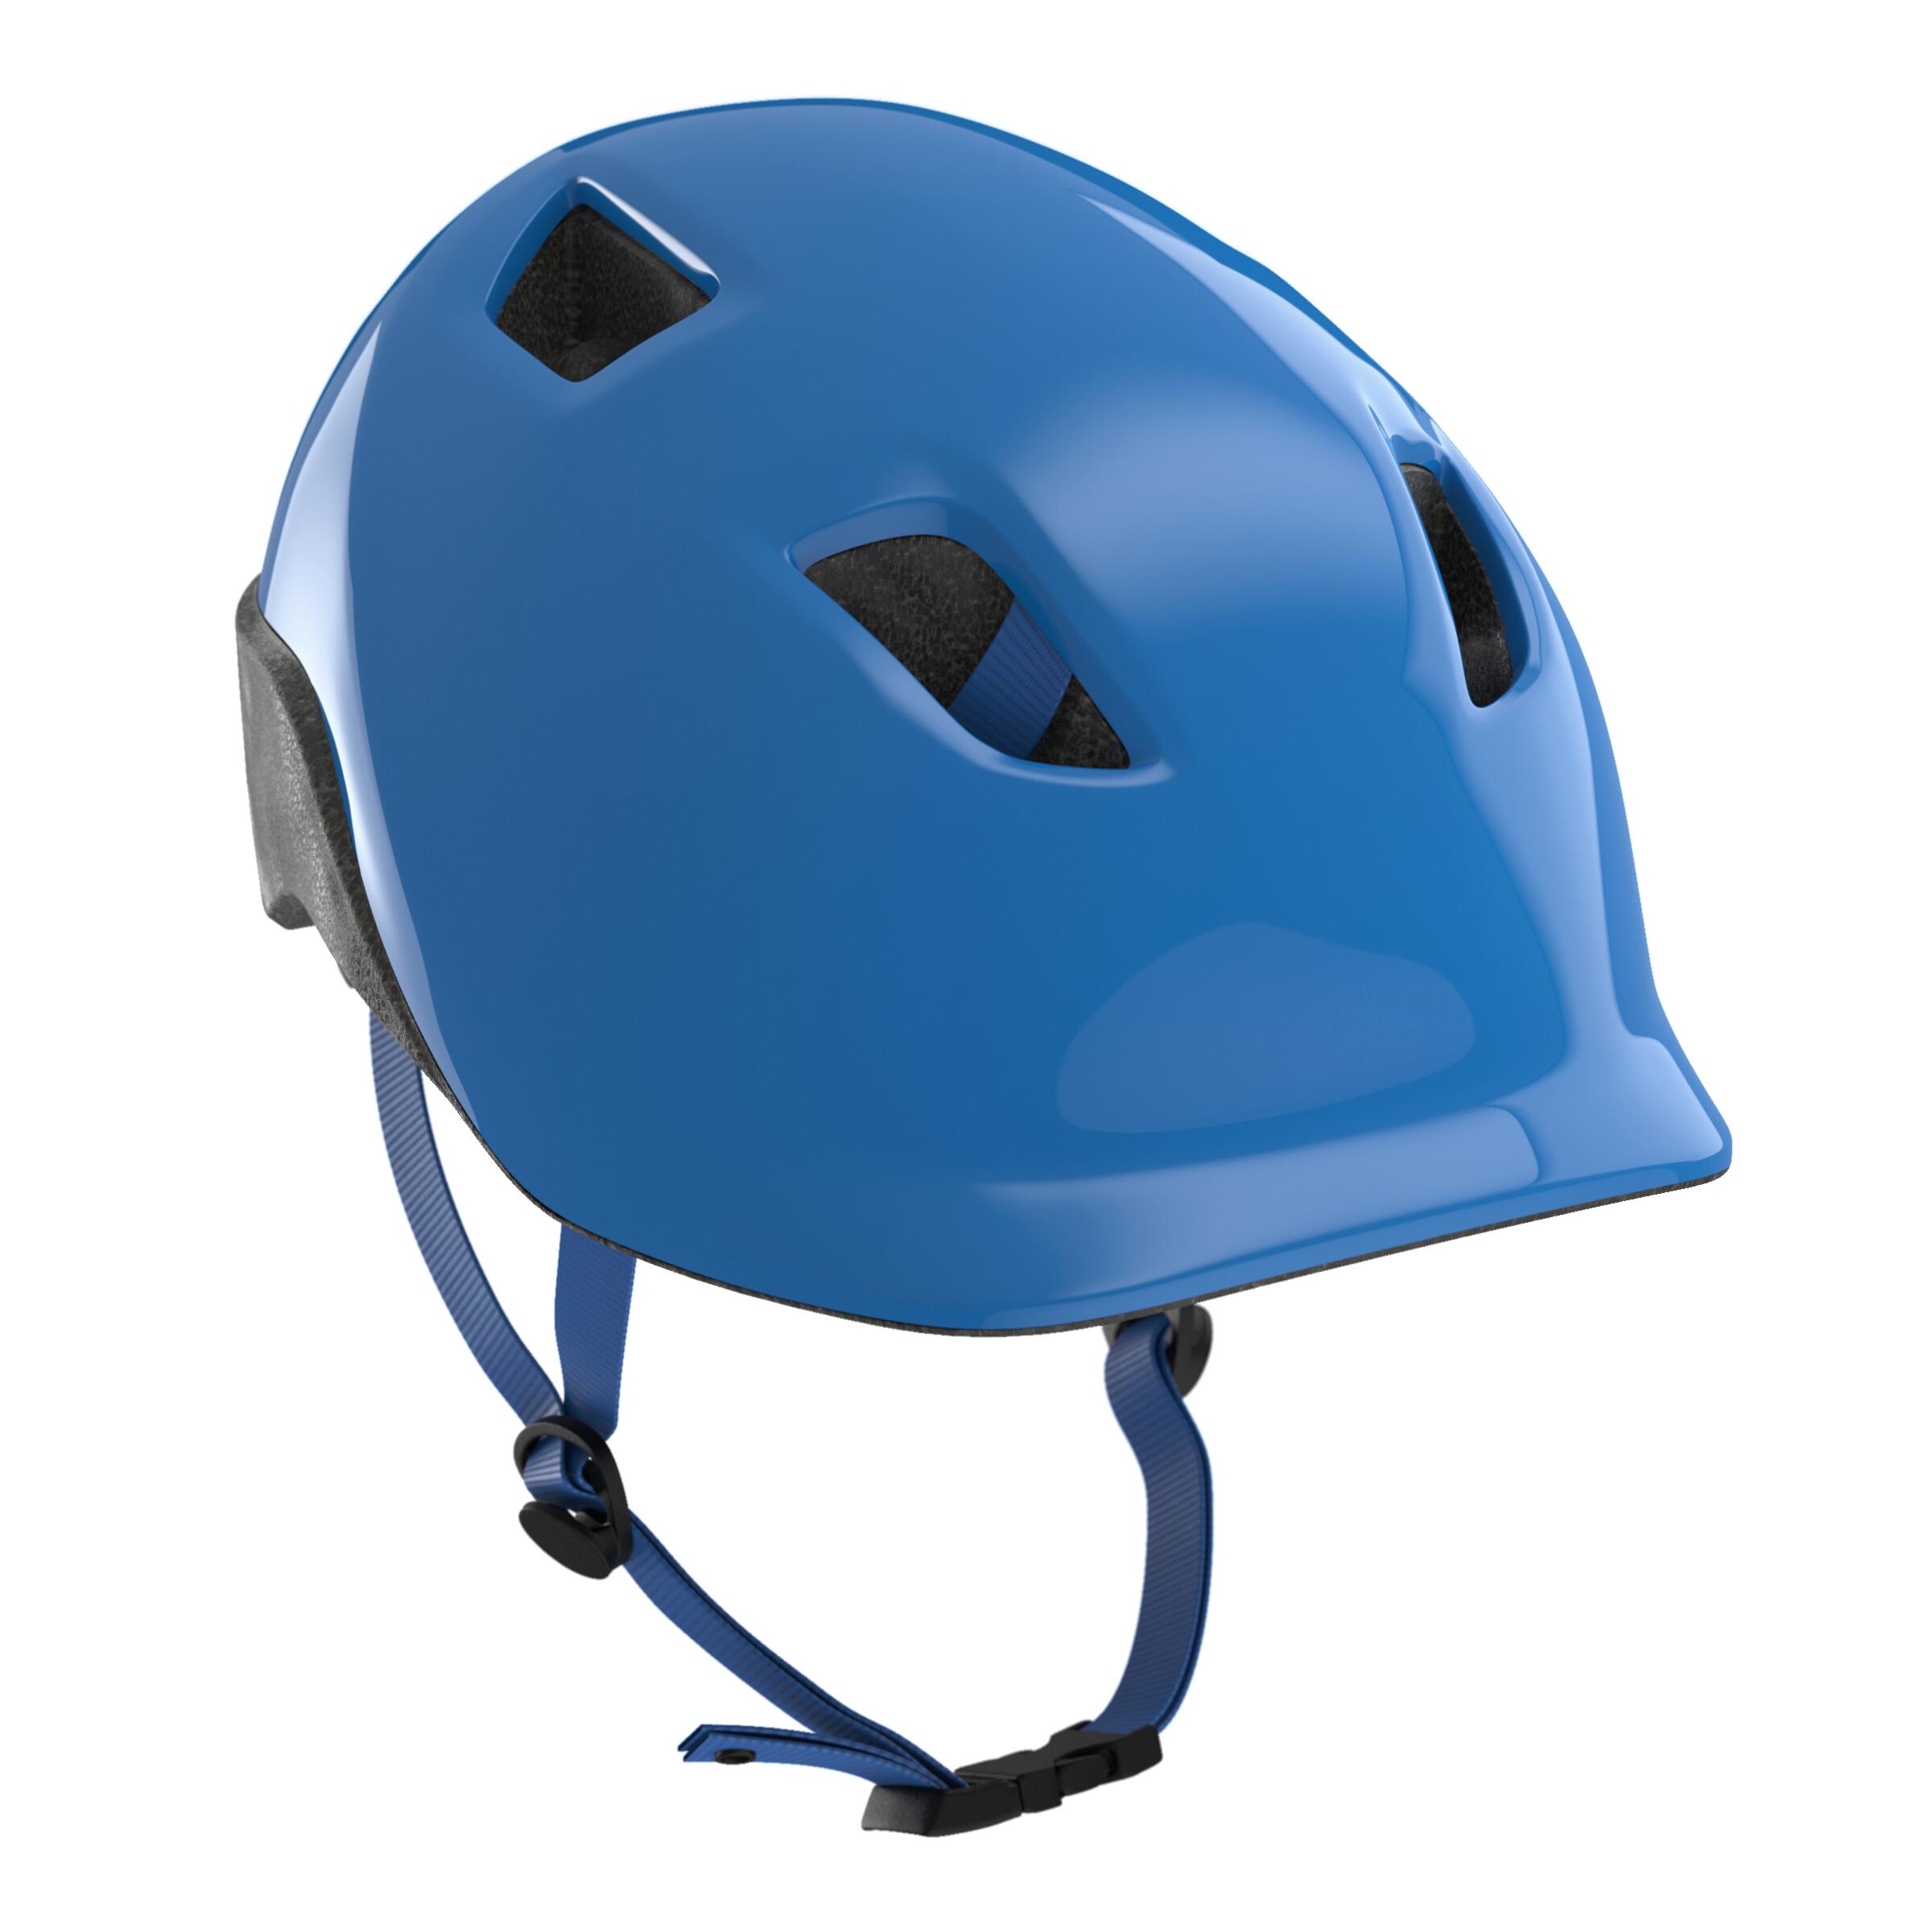 decathlon helmet price